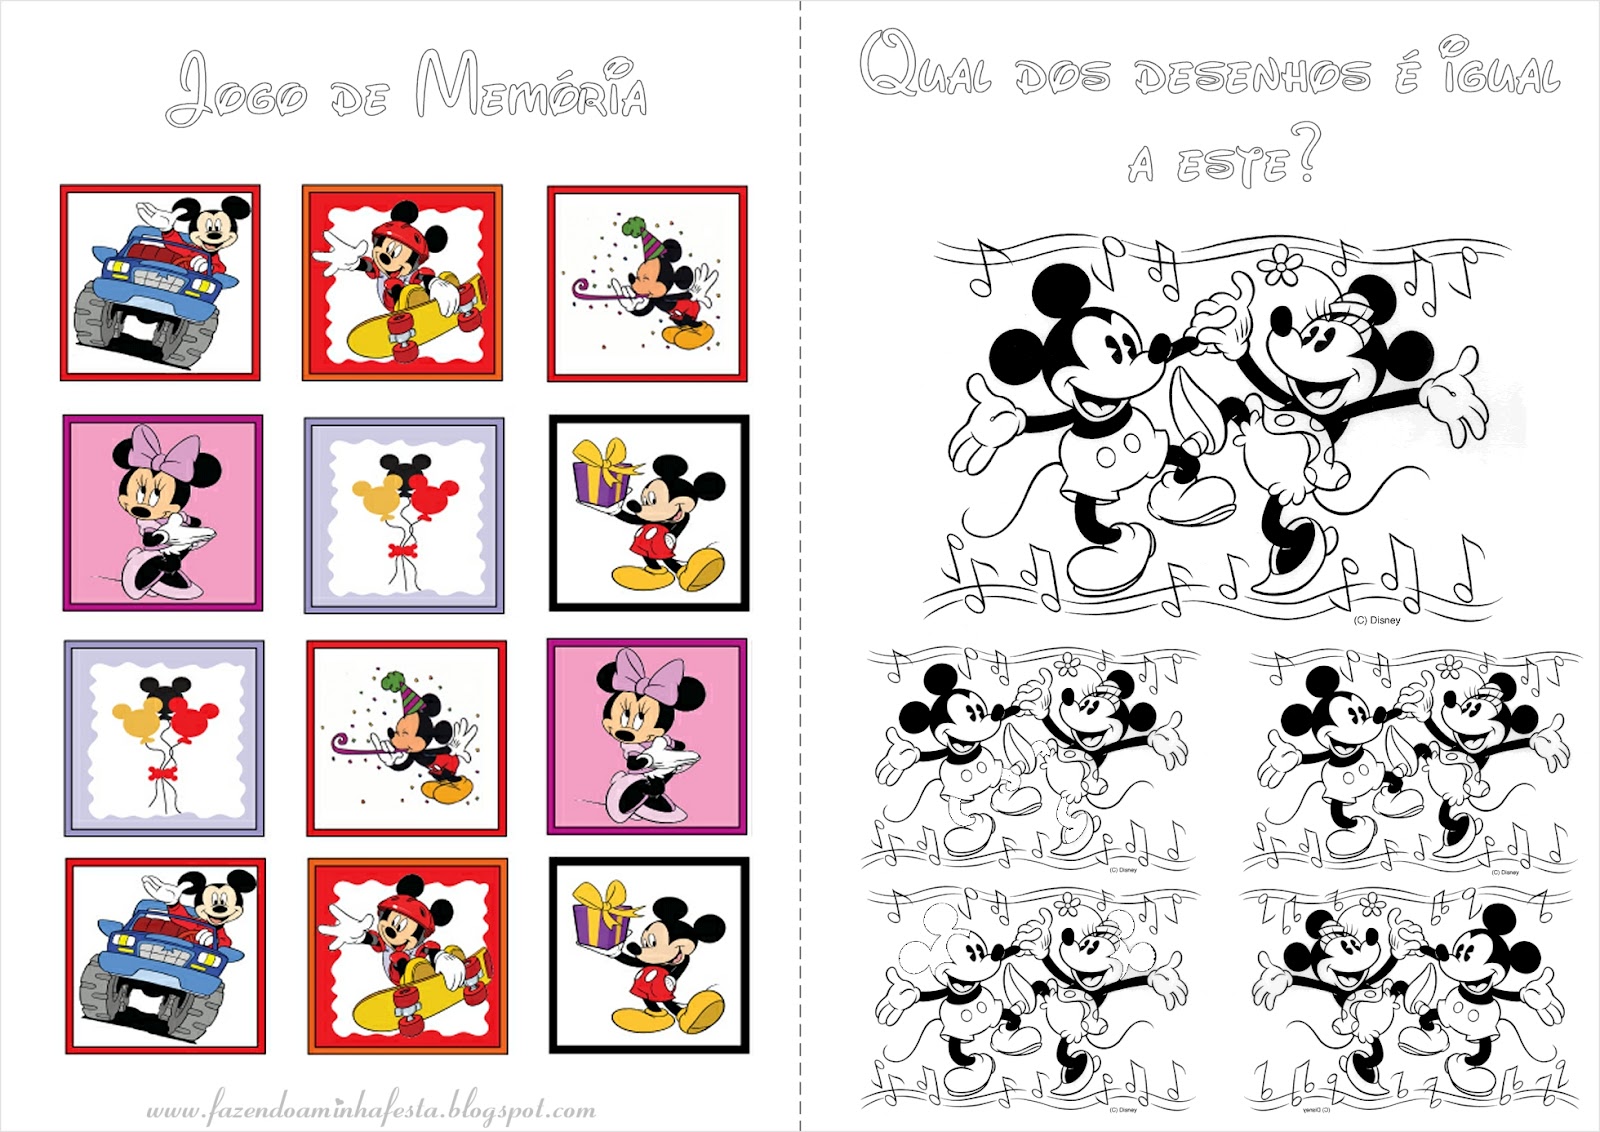 Livrinho para Colorir Mickey e Minnie